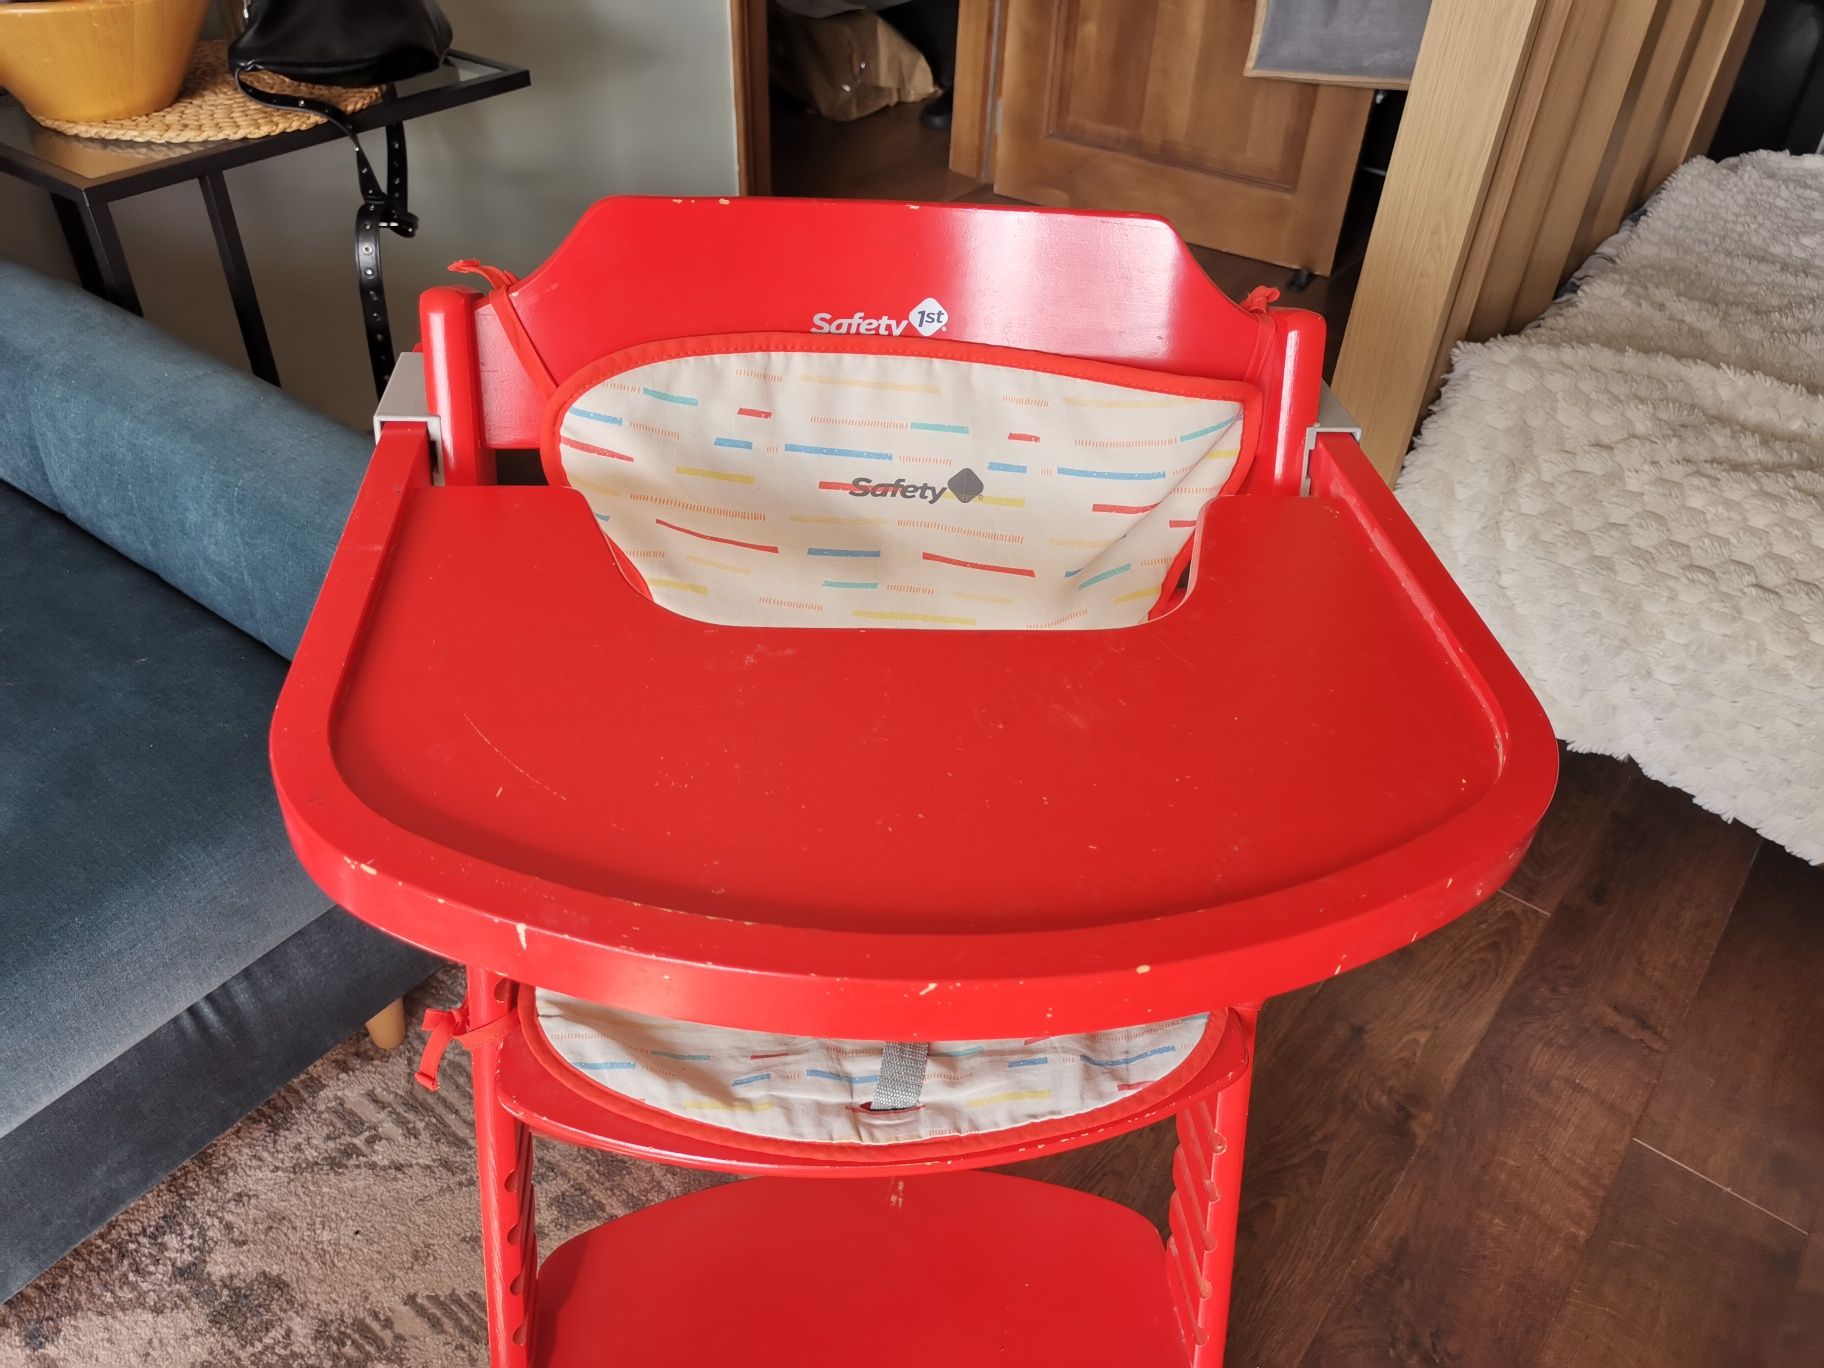 Krzesełko do karmienia czerwone Safety timba